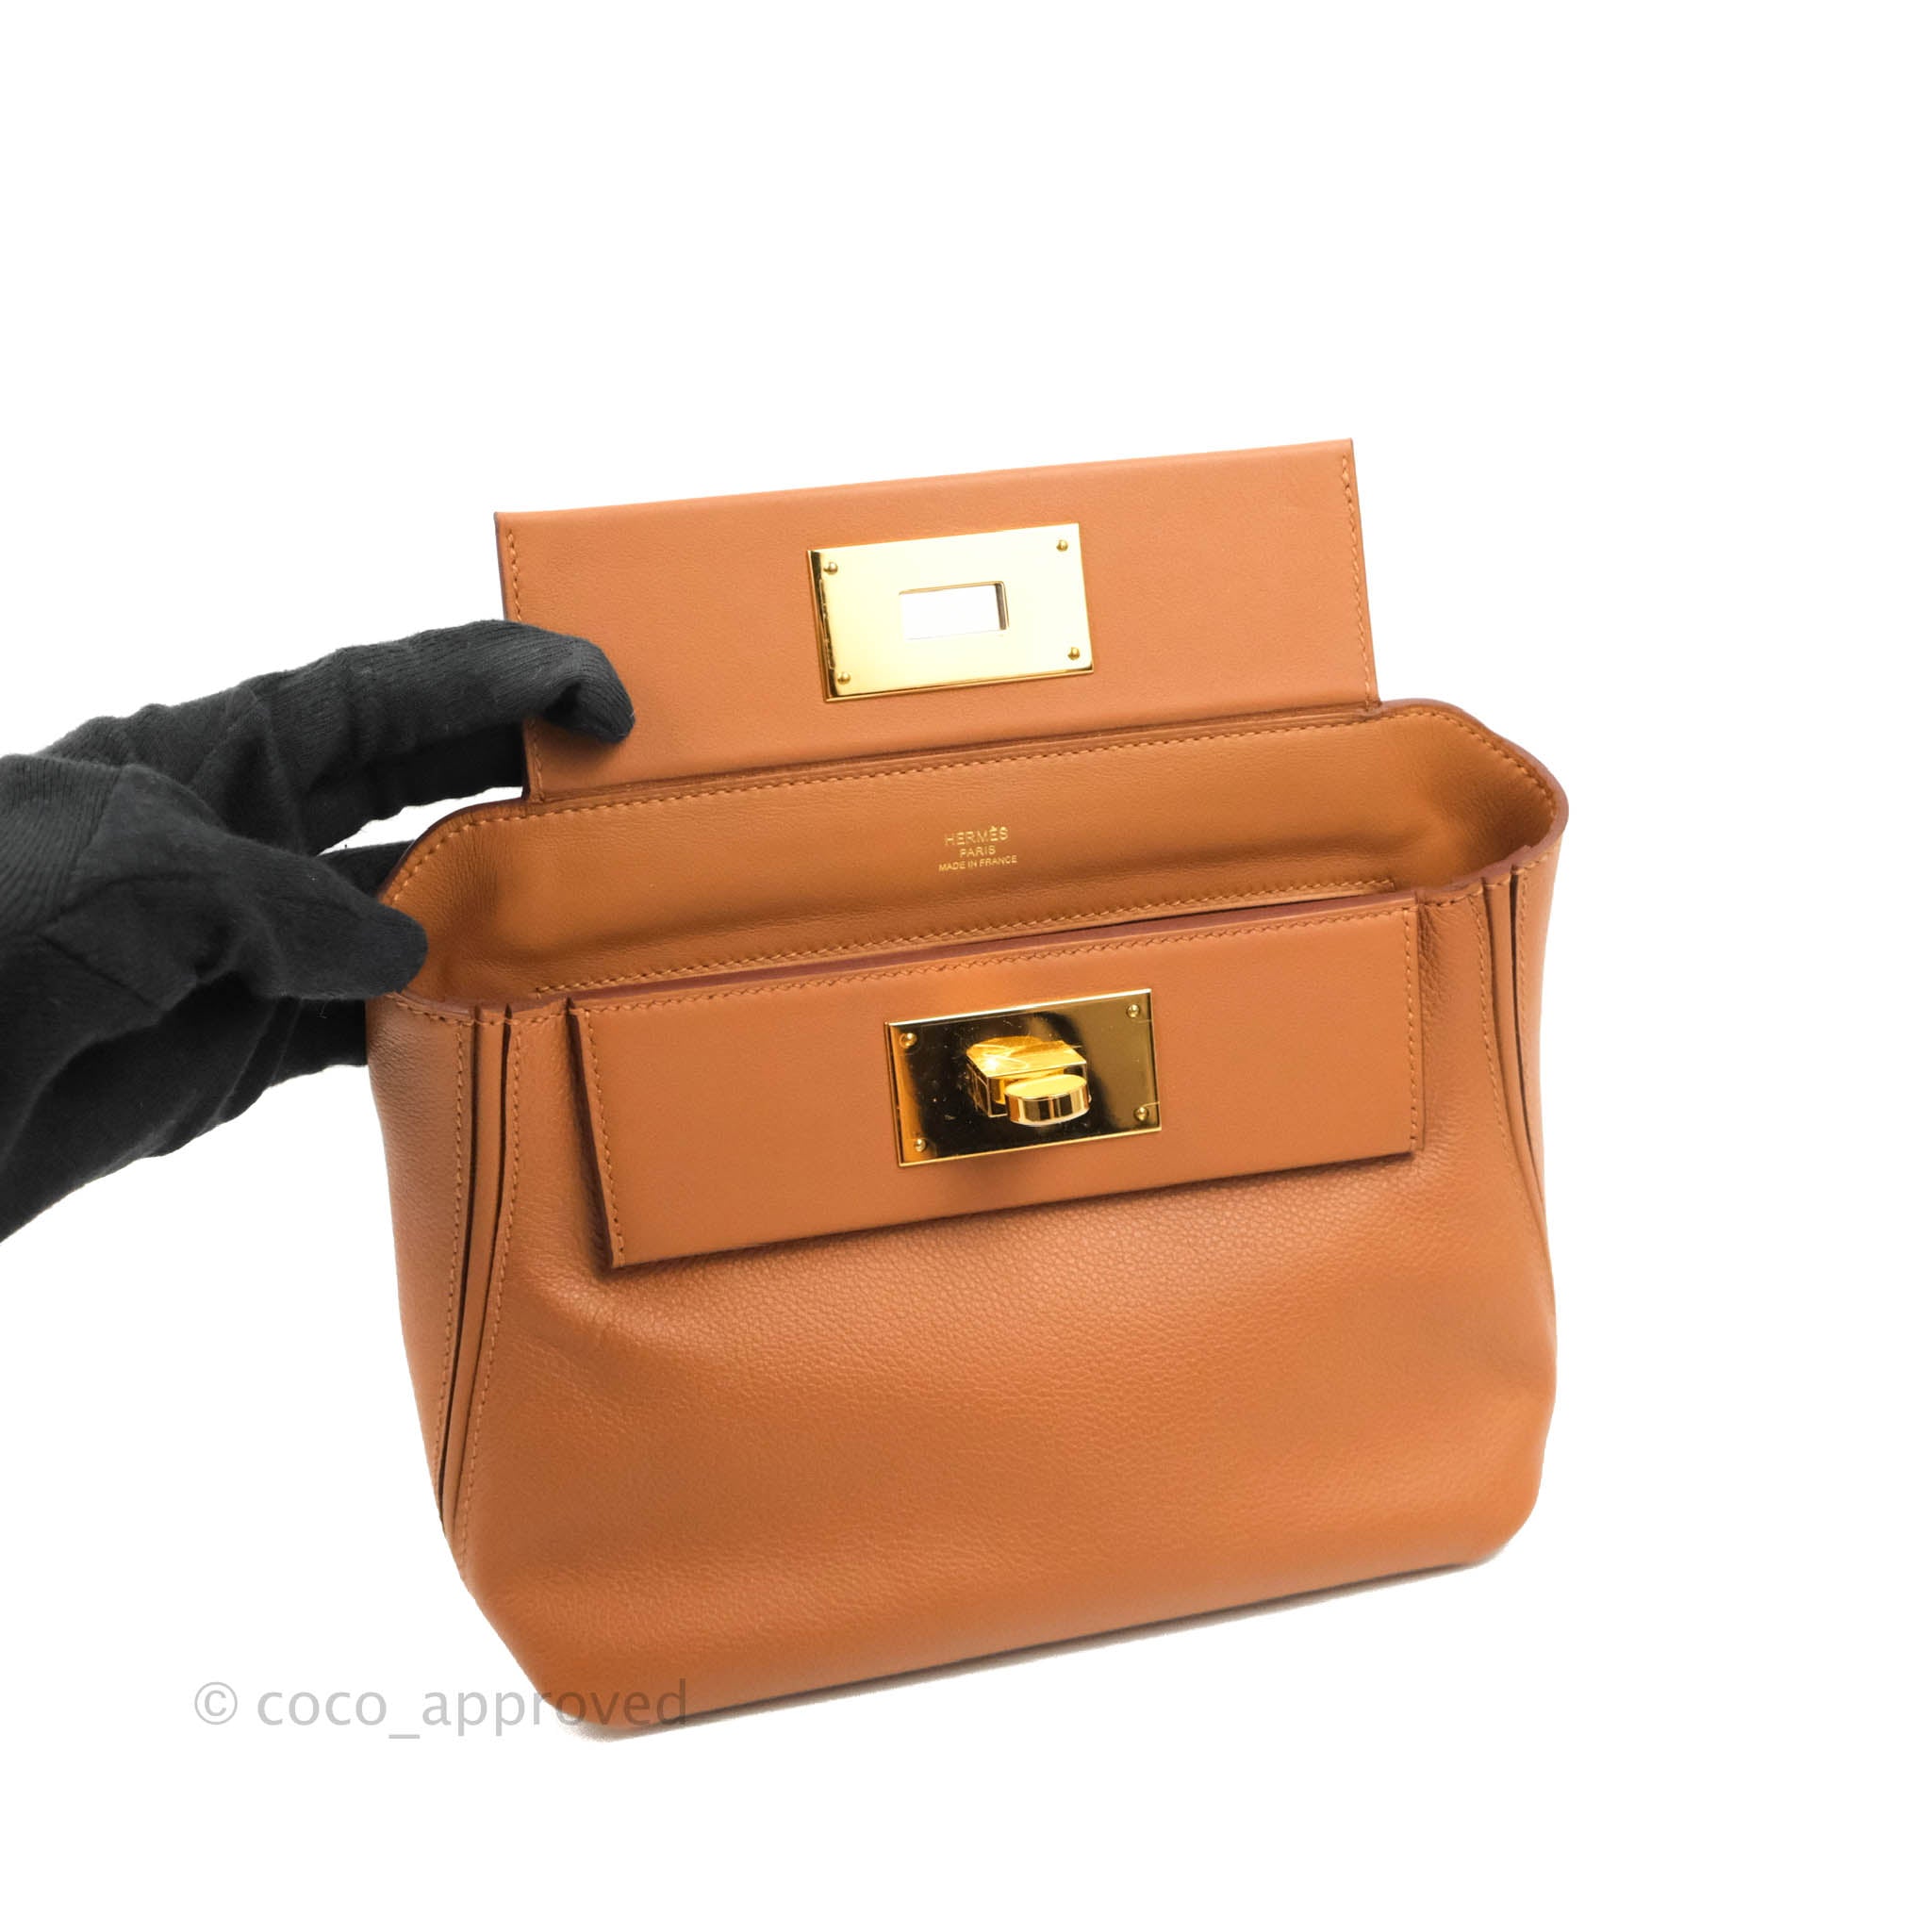 Hermes Mini 24/24 21 Bag Evercolor/Swift Calfskin in Black,Gold,Etoupe -  HoooGoods